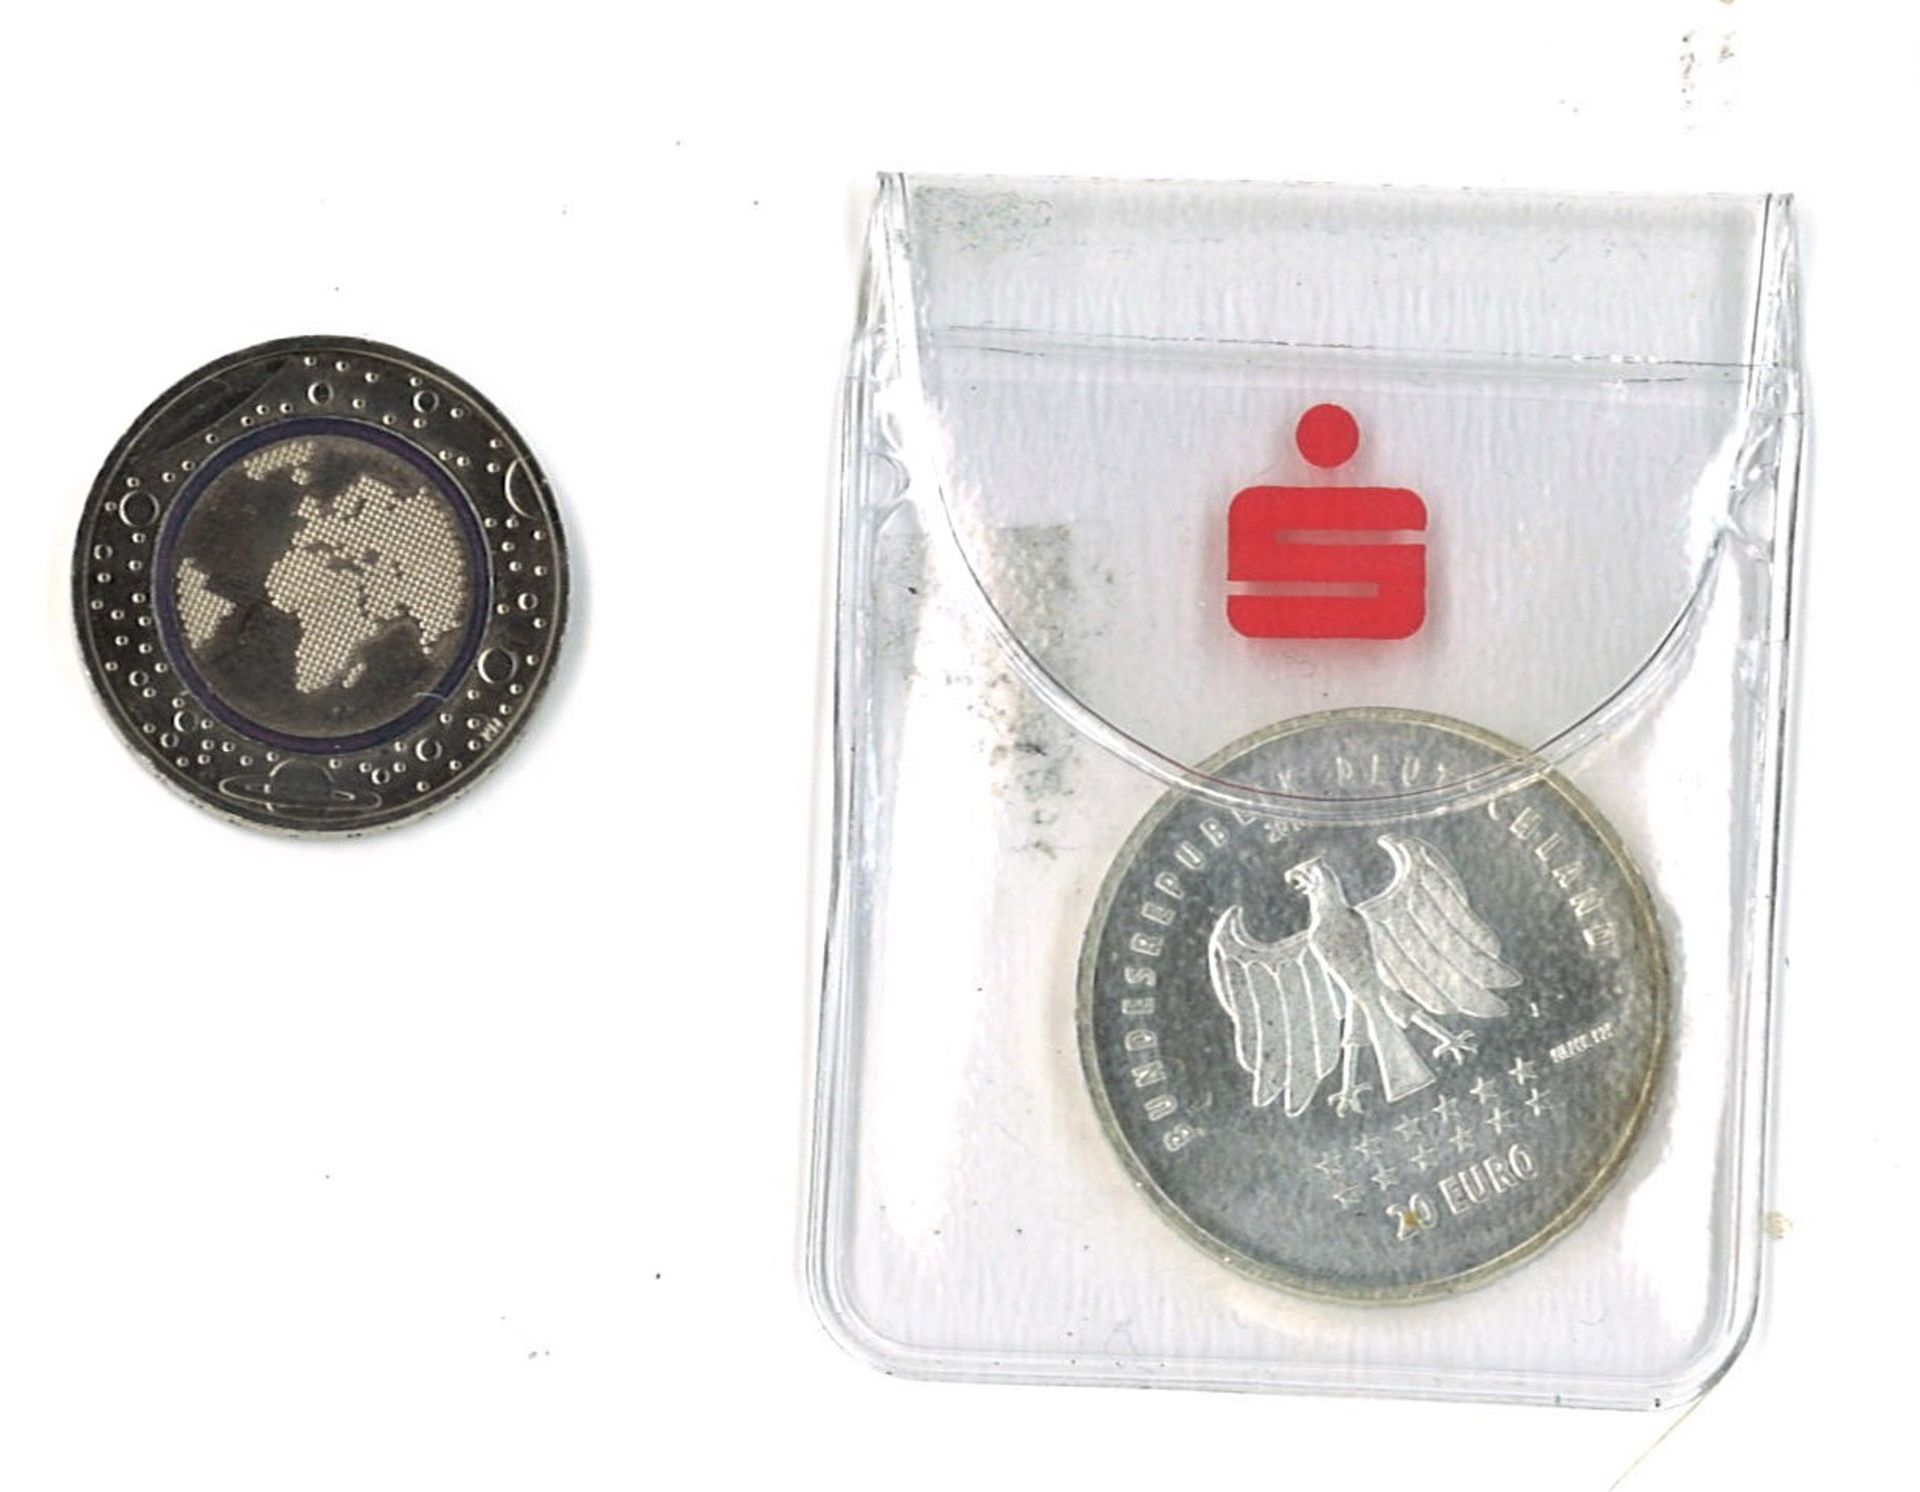 2 Münzen BRD, dabei 1 x 20 Euro 2016, sowie 1 x 5 Euro 2016 blauer Planet Prägestätte F Münzen SS/ - Image 2 of 2